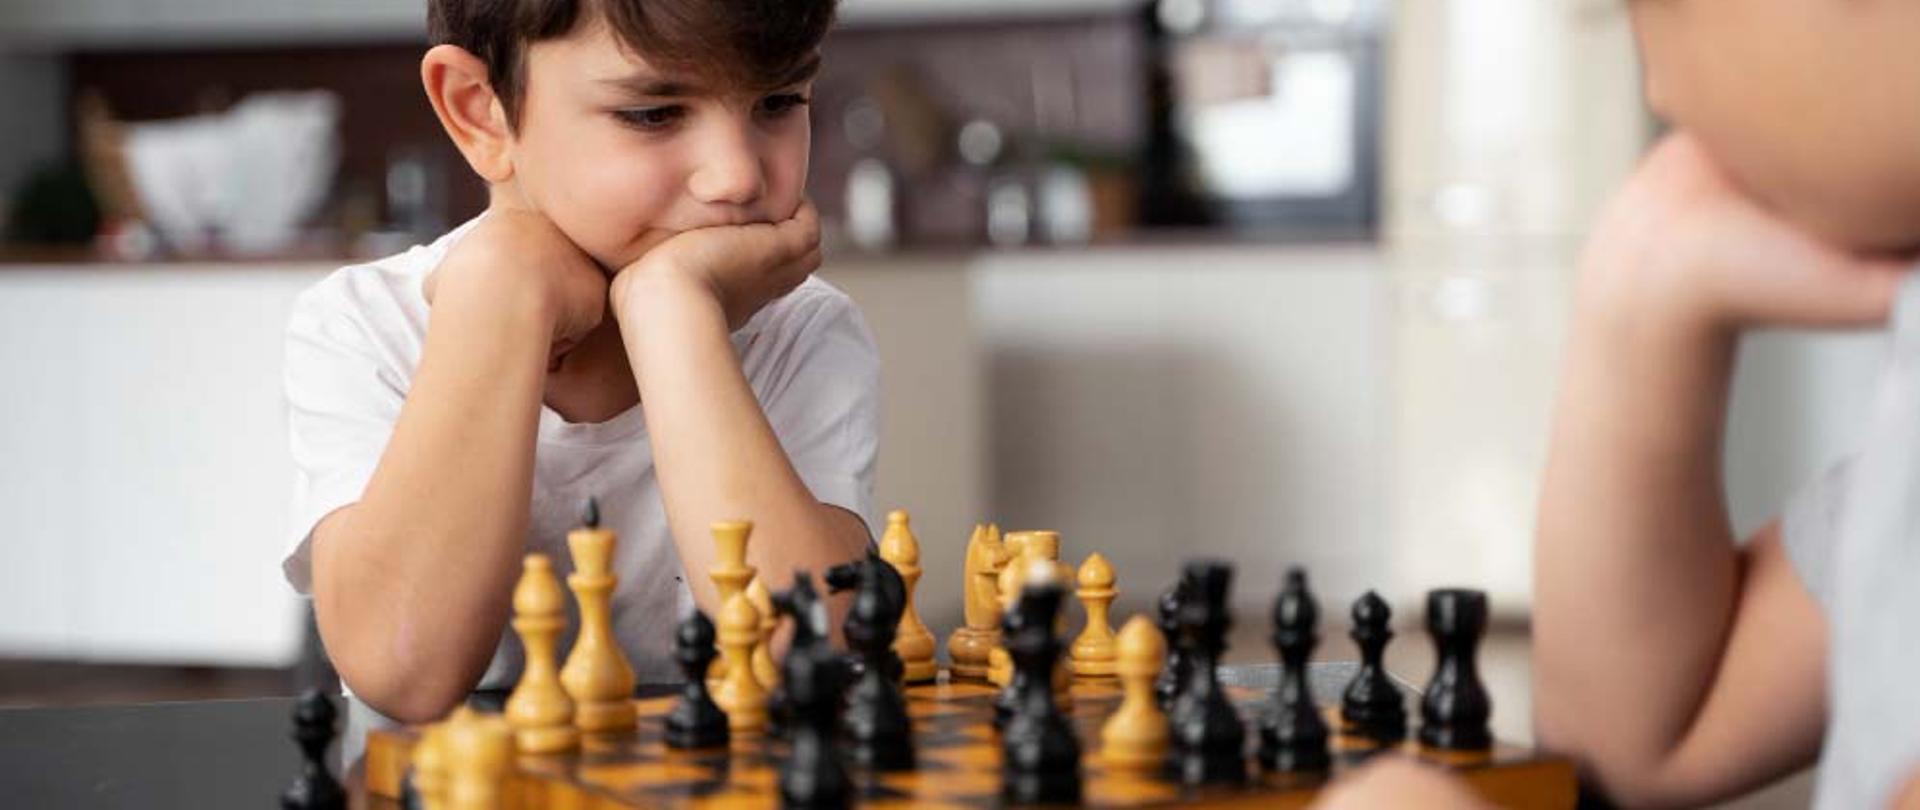 dwóch chłopców grających w szachy. Żródło: https://polska360.org/szachy-z-pasja/